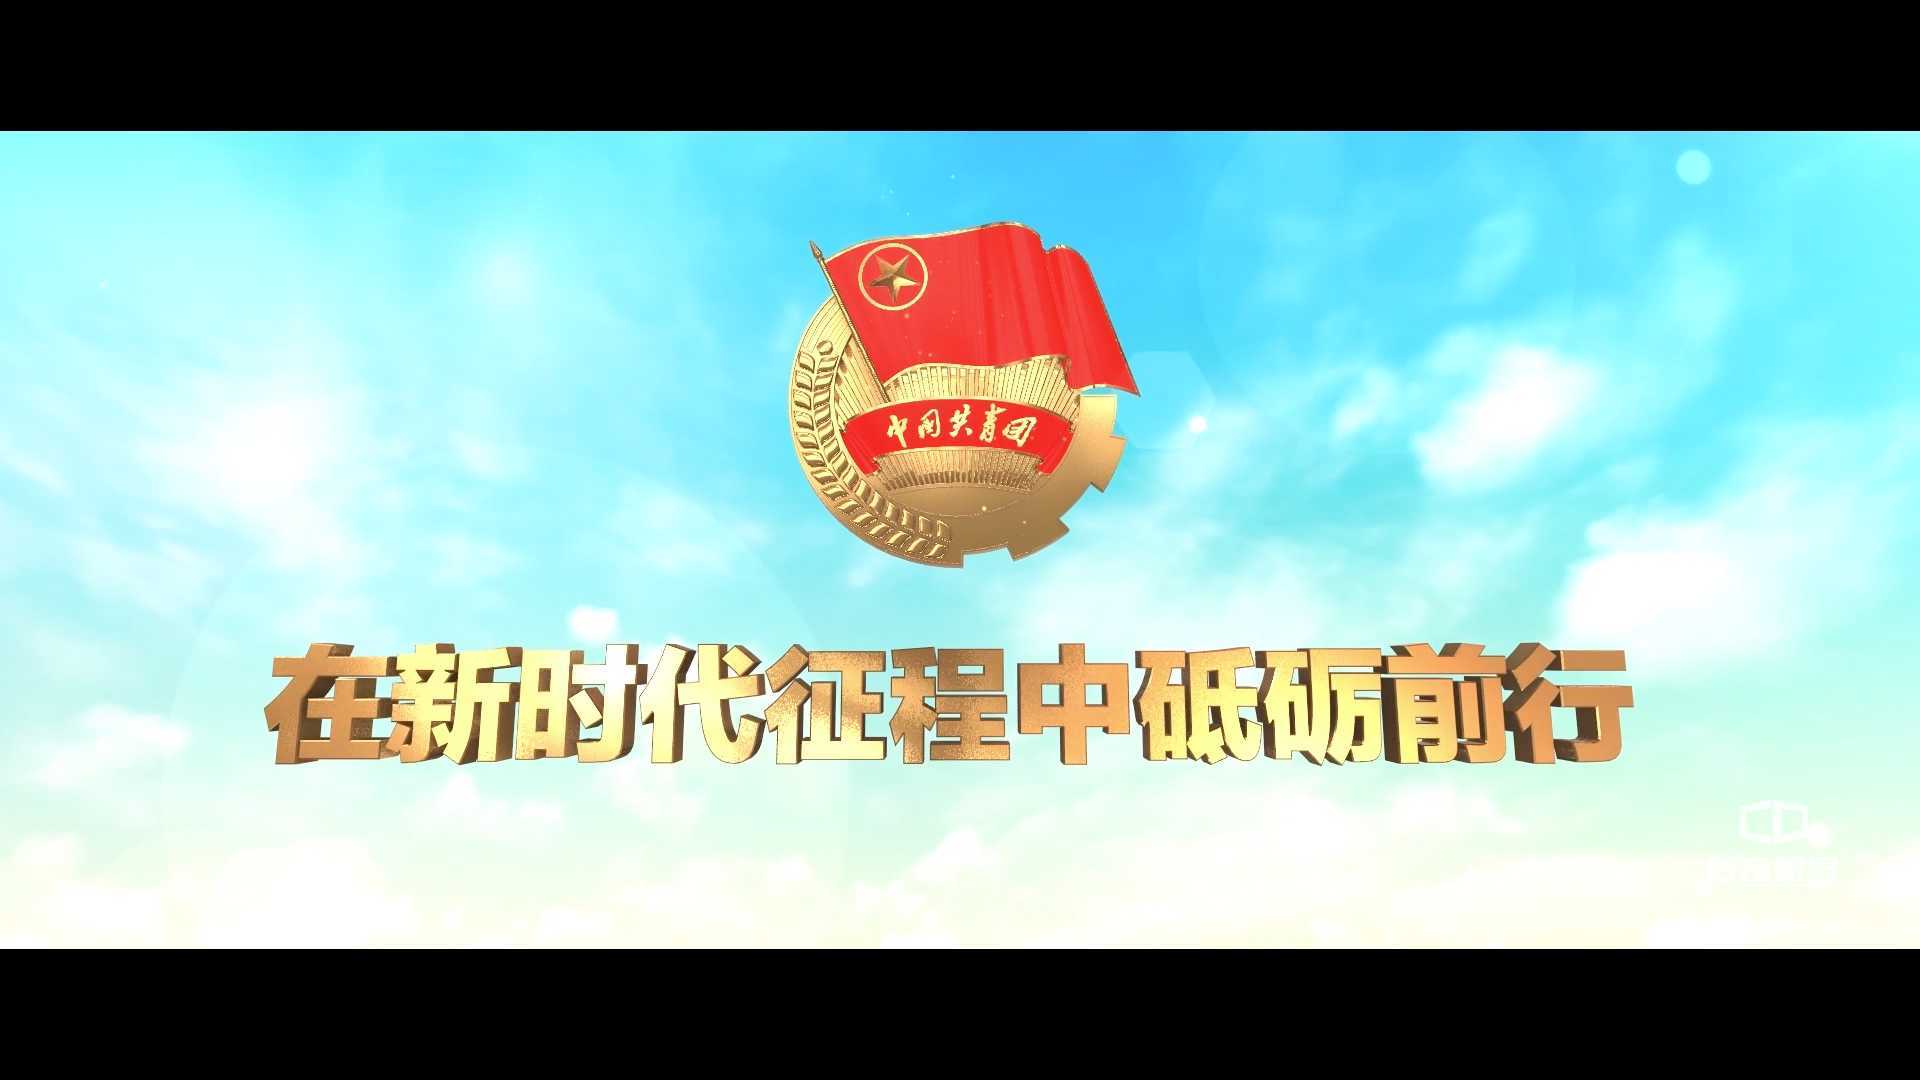 《在新时代征程中砥砺前行》中国共产主义青年团十八大献礼纪录片——传奇视界承制